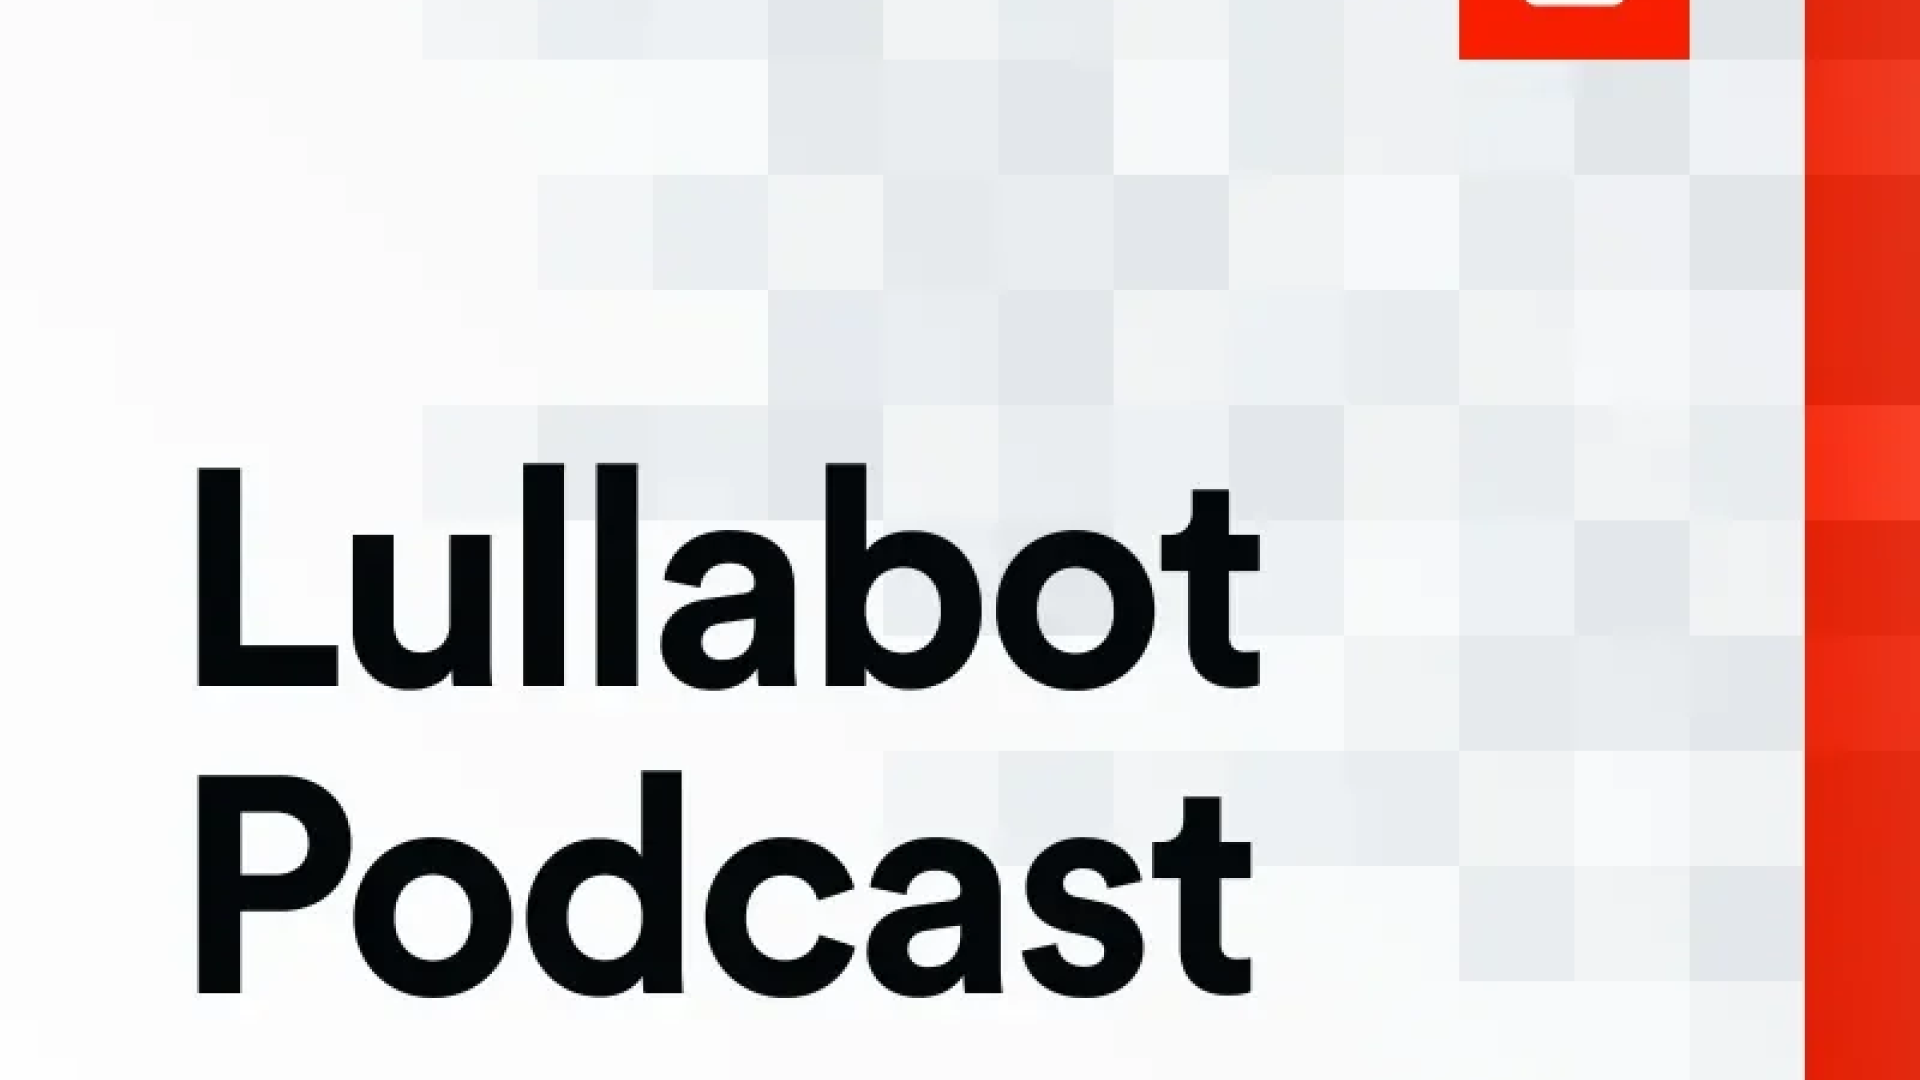 Lullabot Podcast